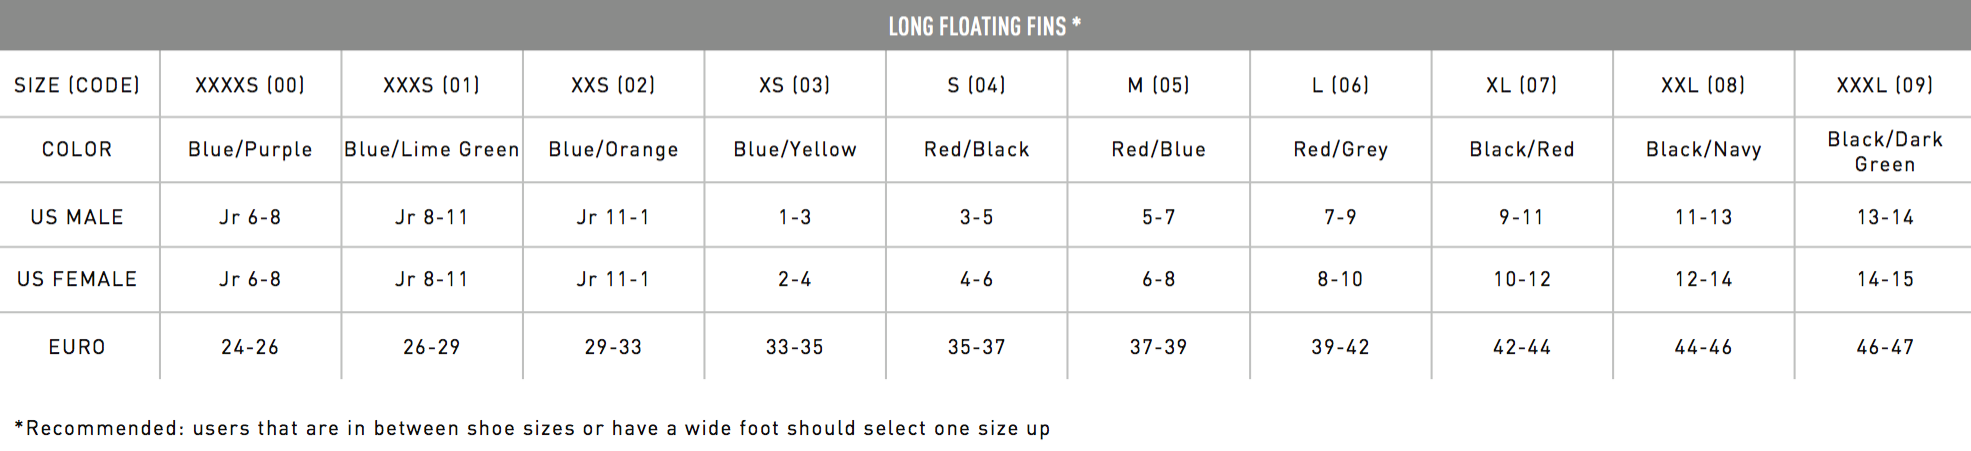 Tyr Swim Fins Size Chart